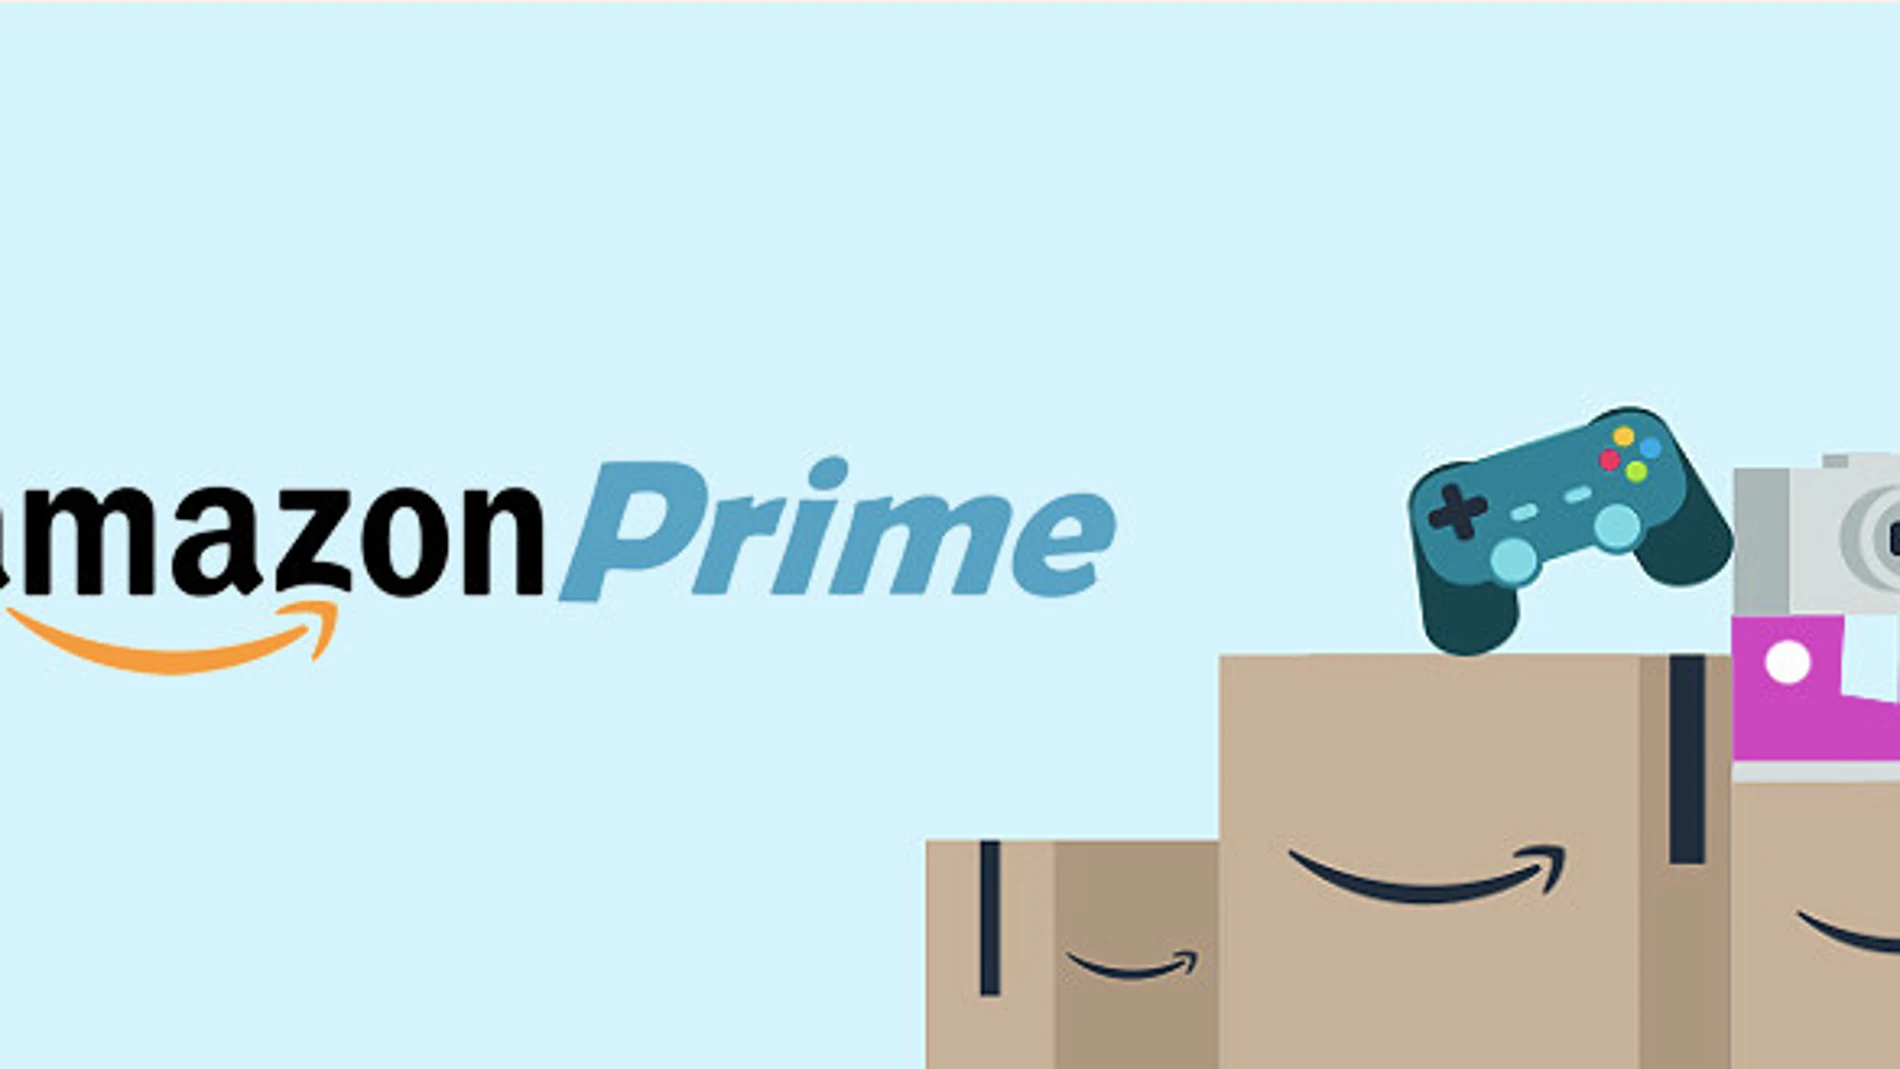 Amazon eleva un 80% su suscripción Prime, de 19,95 a 36 euros